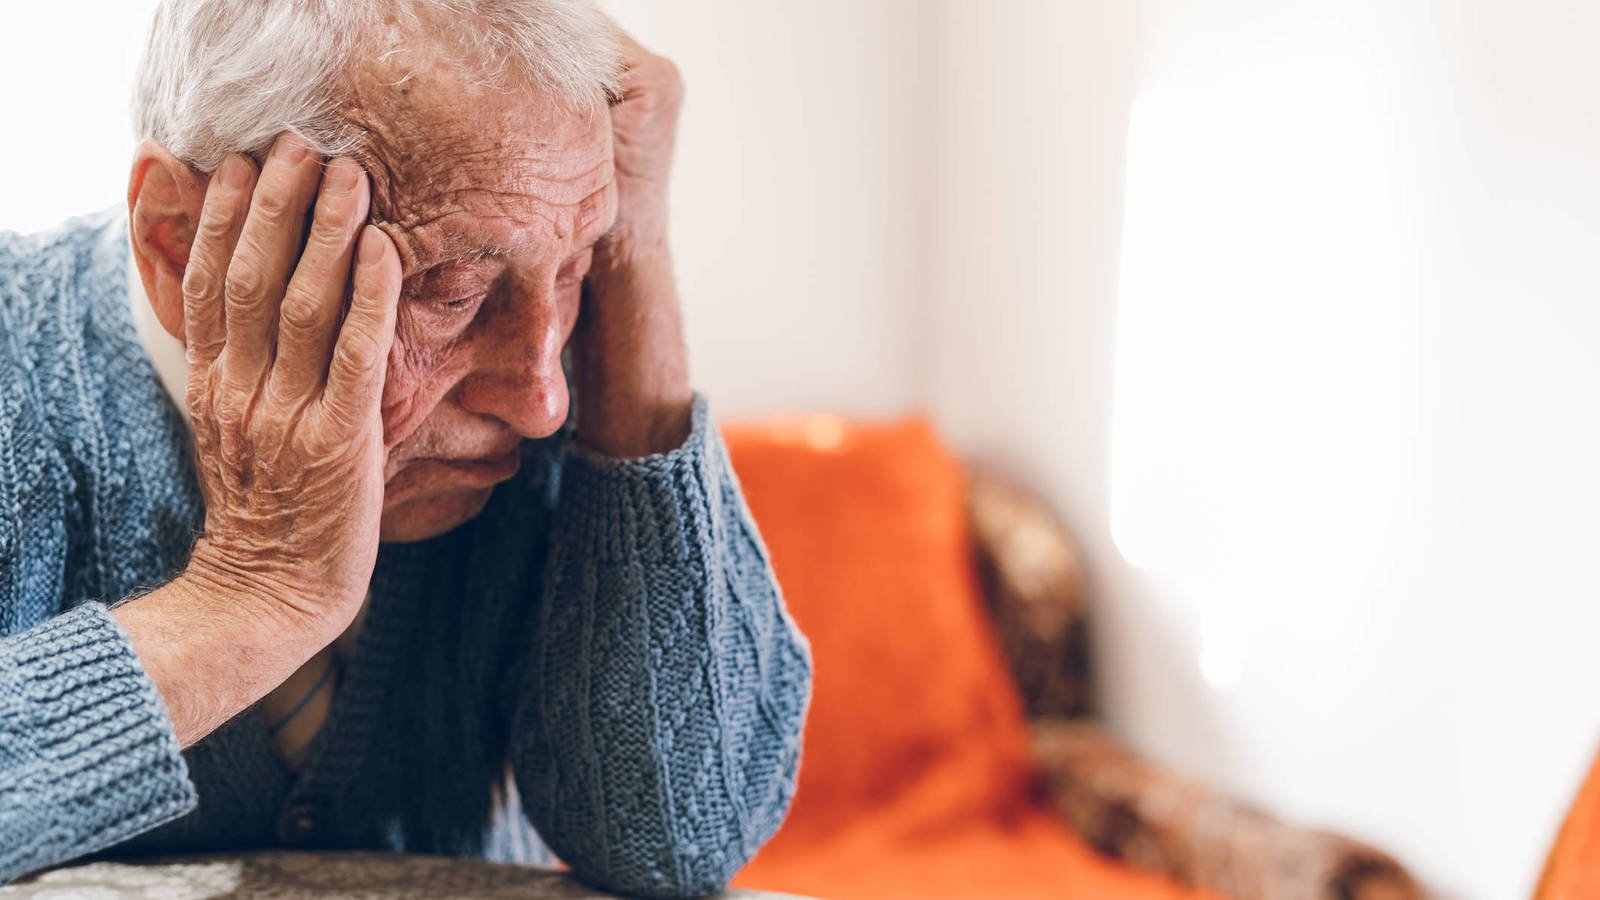 Estudio australiano advierte que un cerebro deprimido aumenta el riesgo de padecer de alzhéimer o demencia